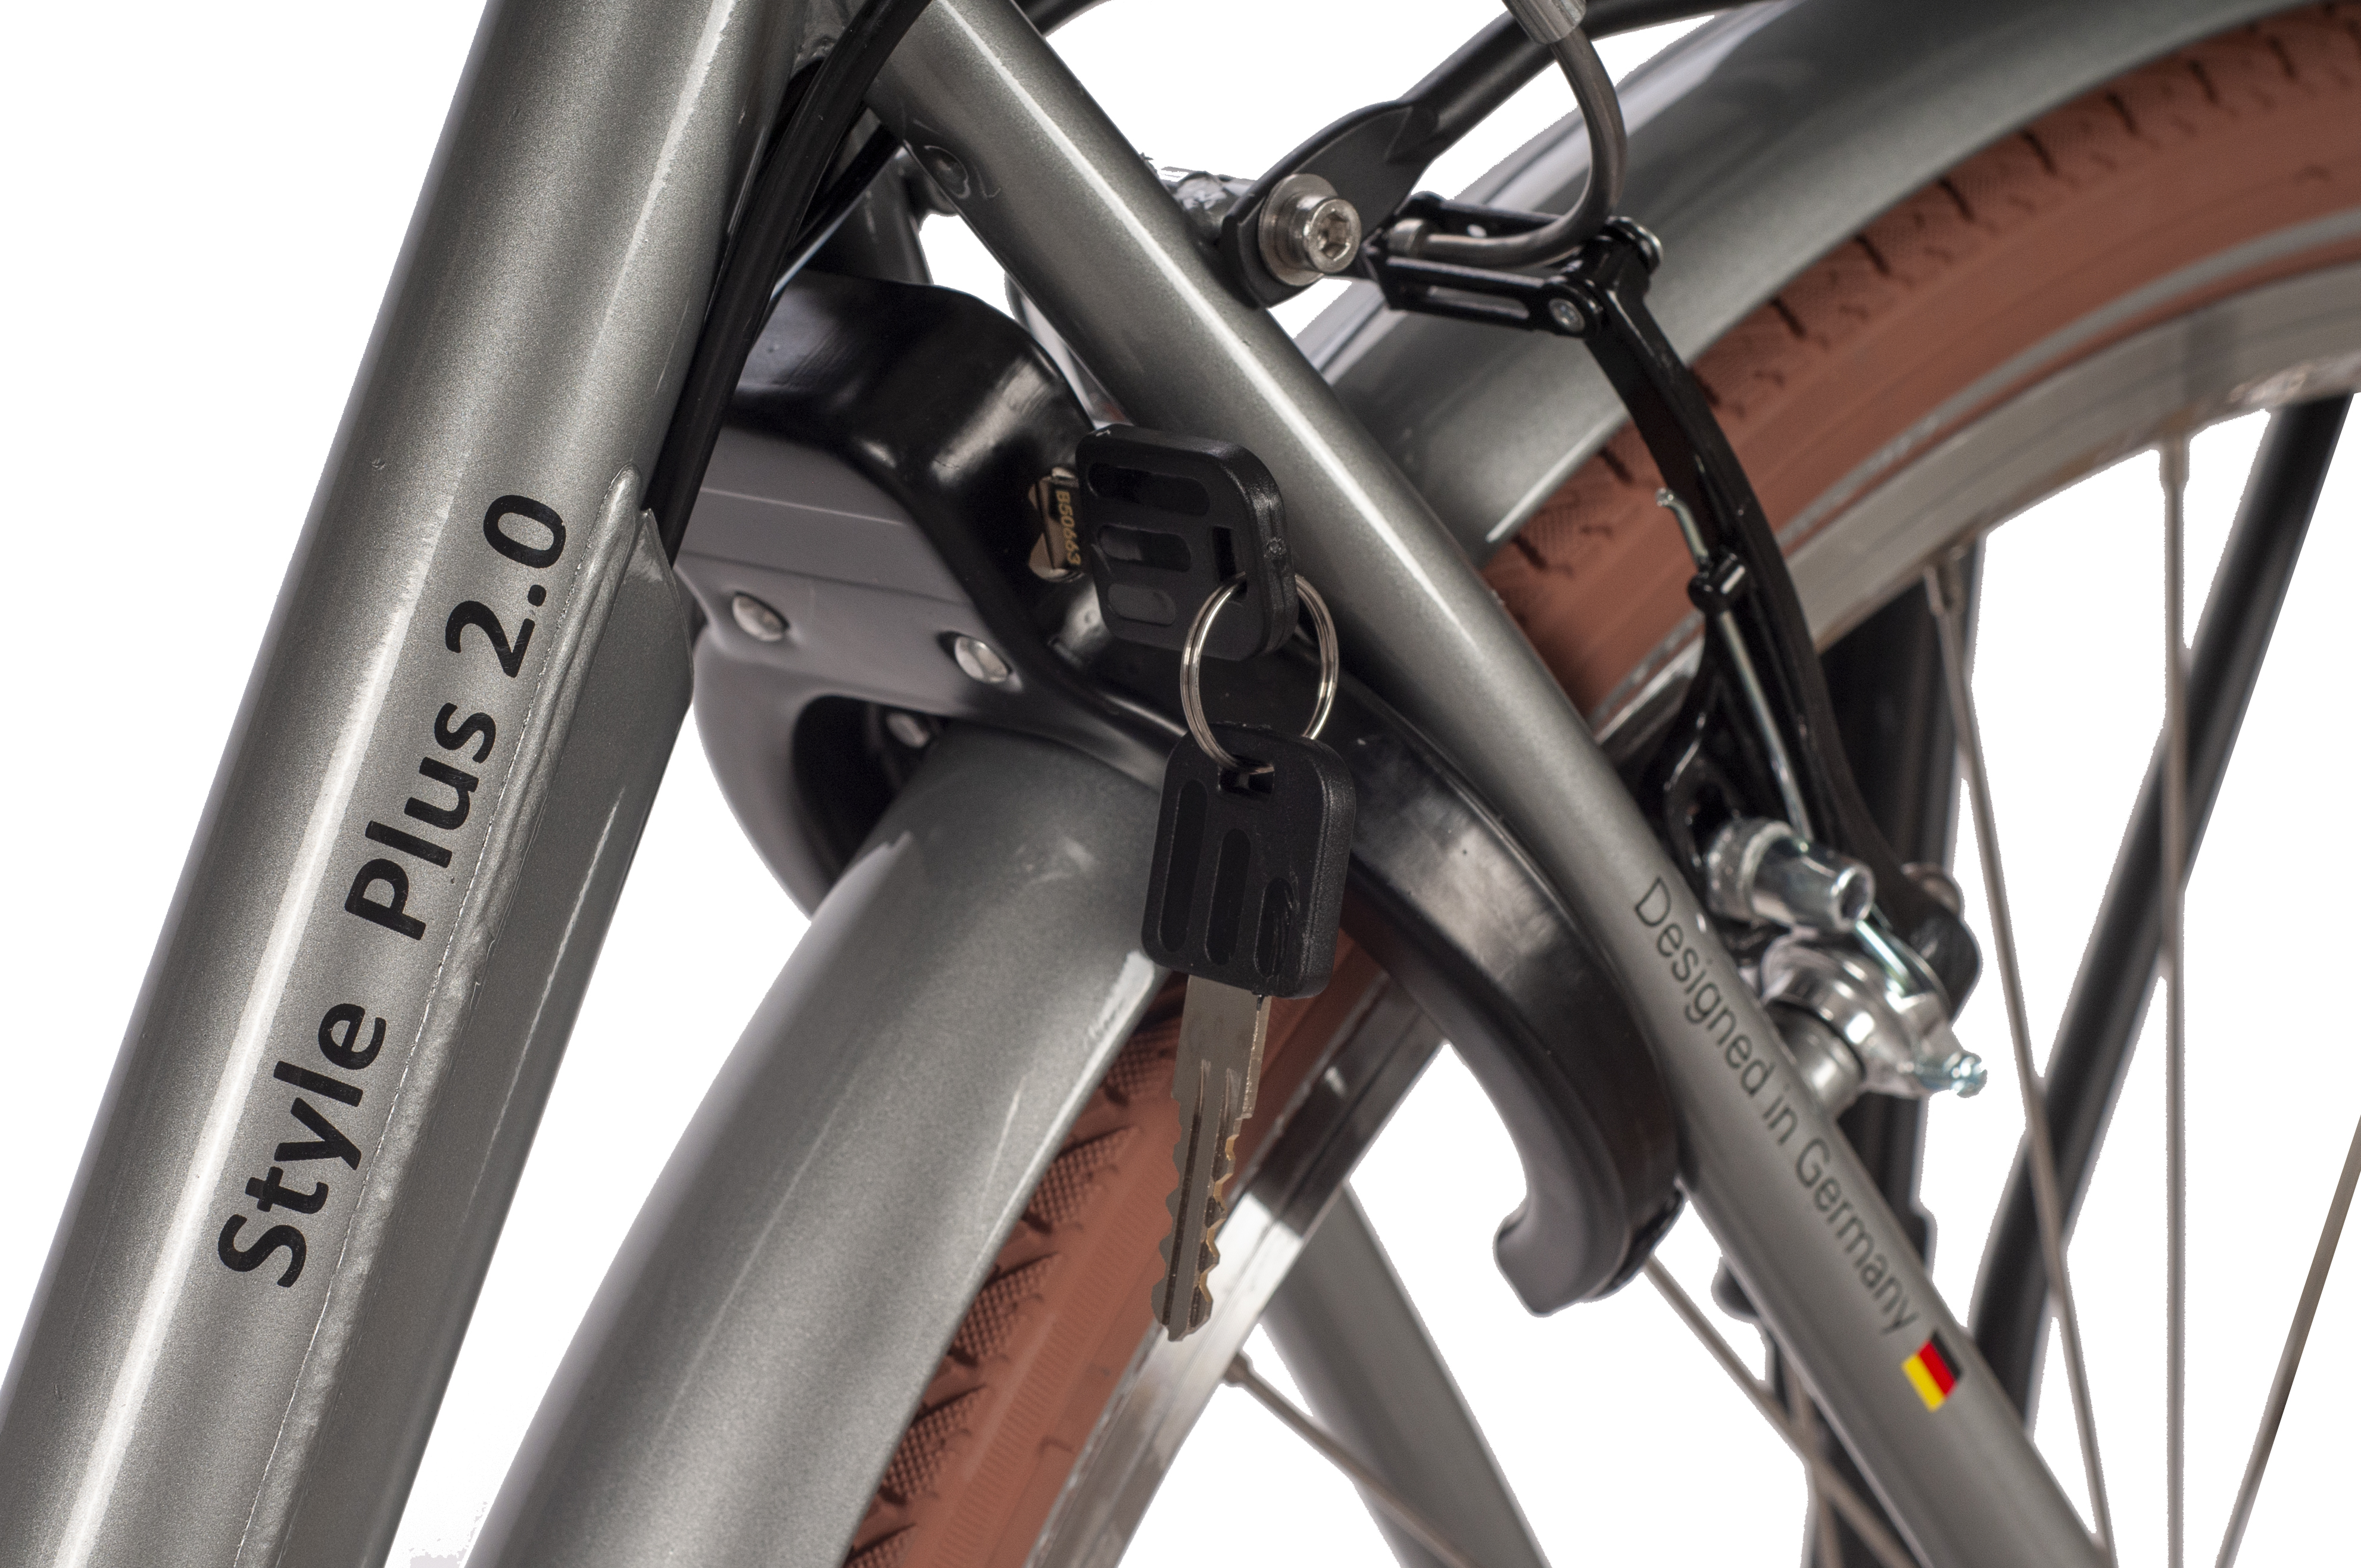 SAXONETTE Style Plus 2.0 E-Citybike Classic Wave Rücktrittbremse Vorderradmotor 3 Gang Nabenschaltung silber glänzend